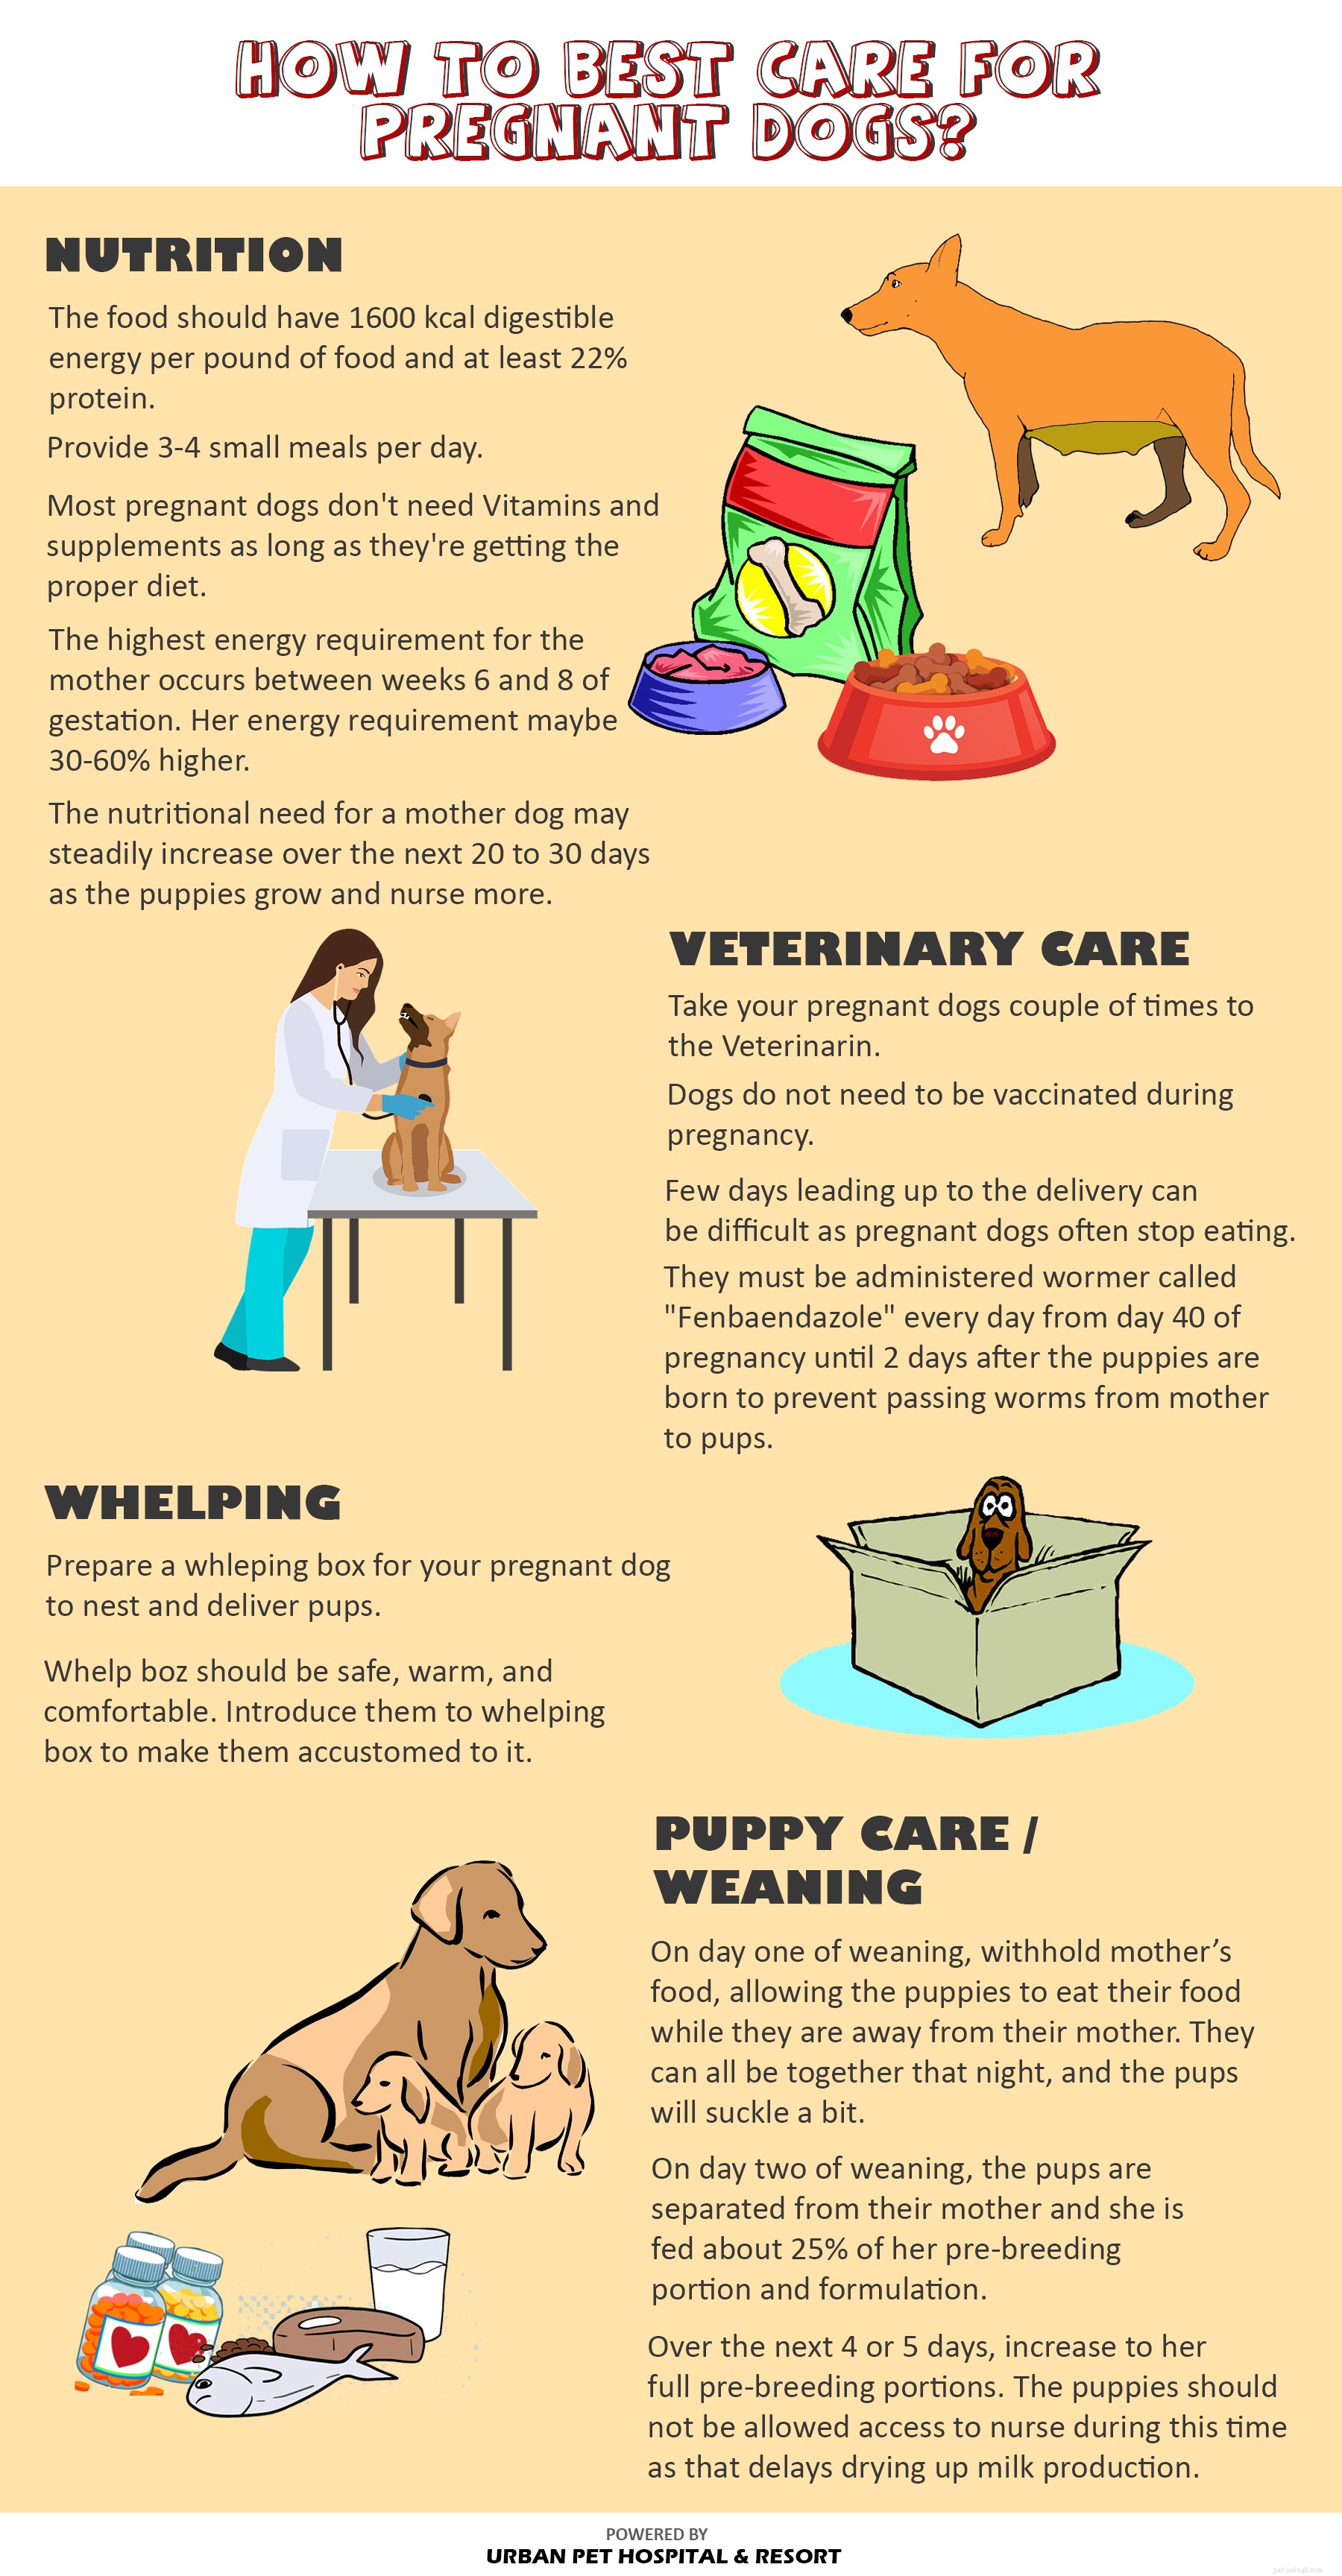 임신한 개를 돌보는 방법은 무엇입니까?